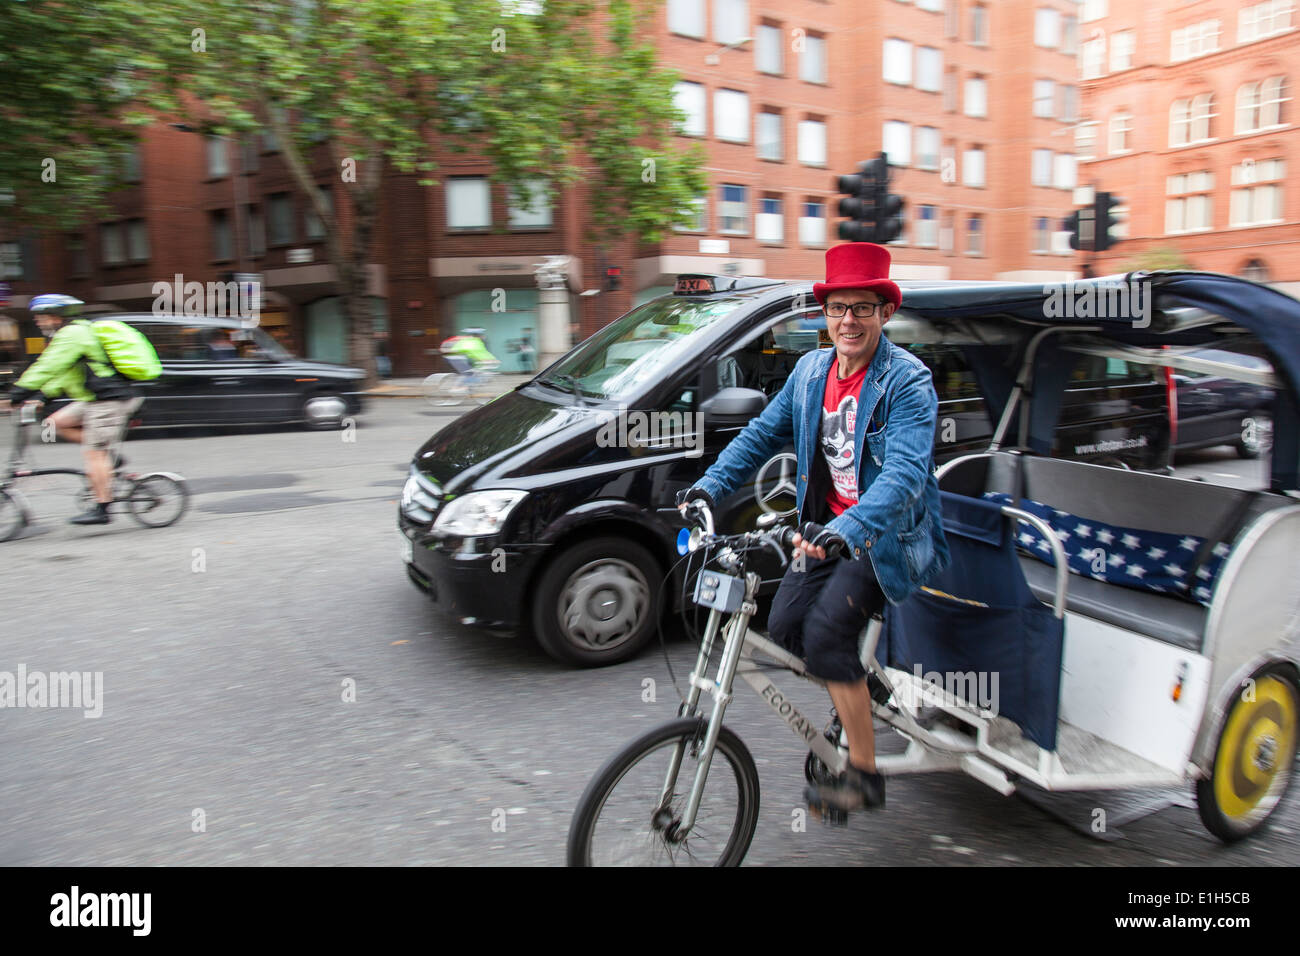 Ein Radfahrer trägt einen roten Hut, Lächeln, als er eine "Ecotaxi" oder "Fahrrad Rikscha" durch die belebten Straßen von London reitet Stockfoto